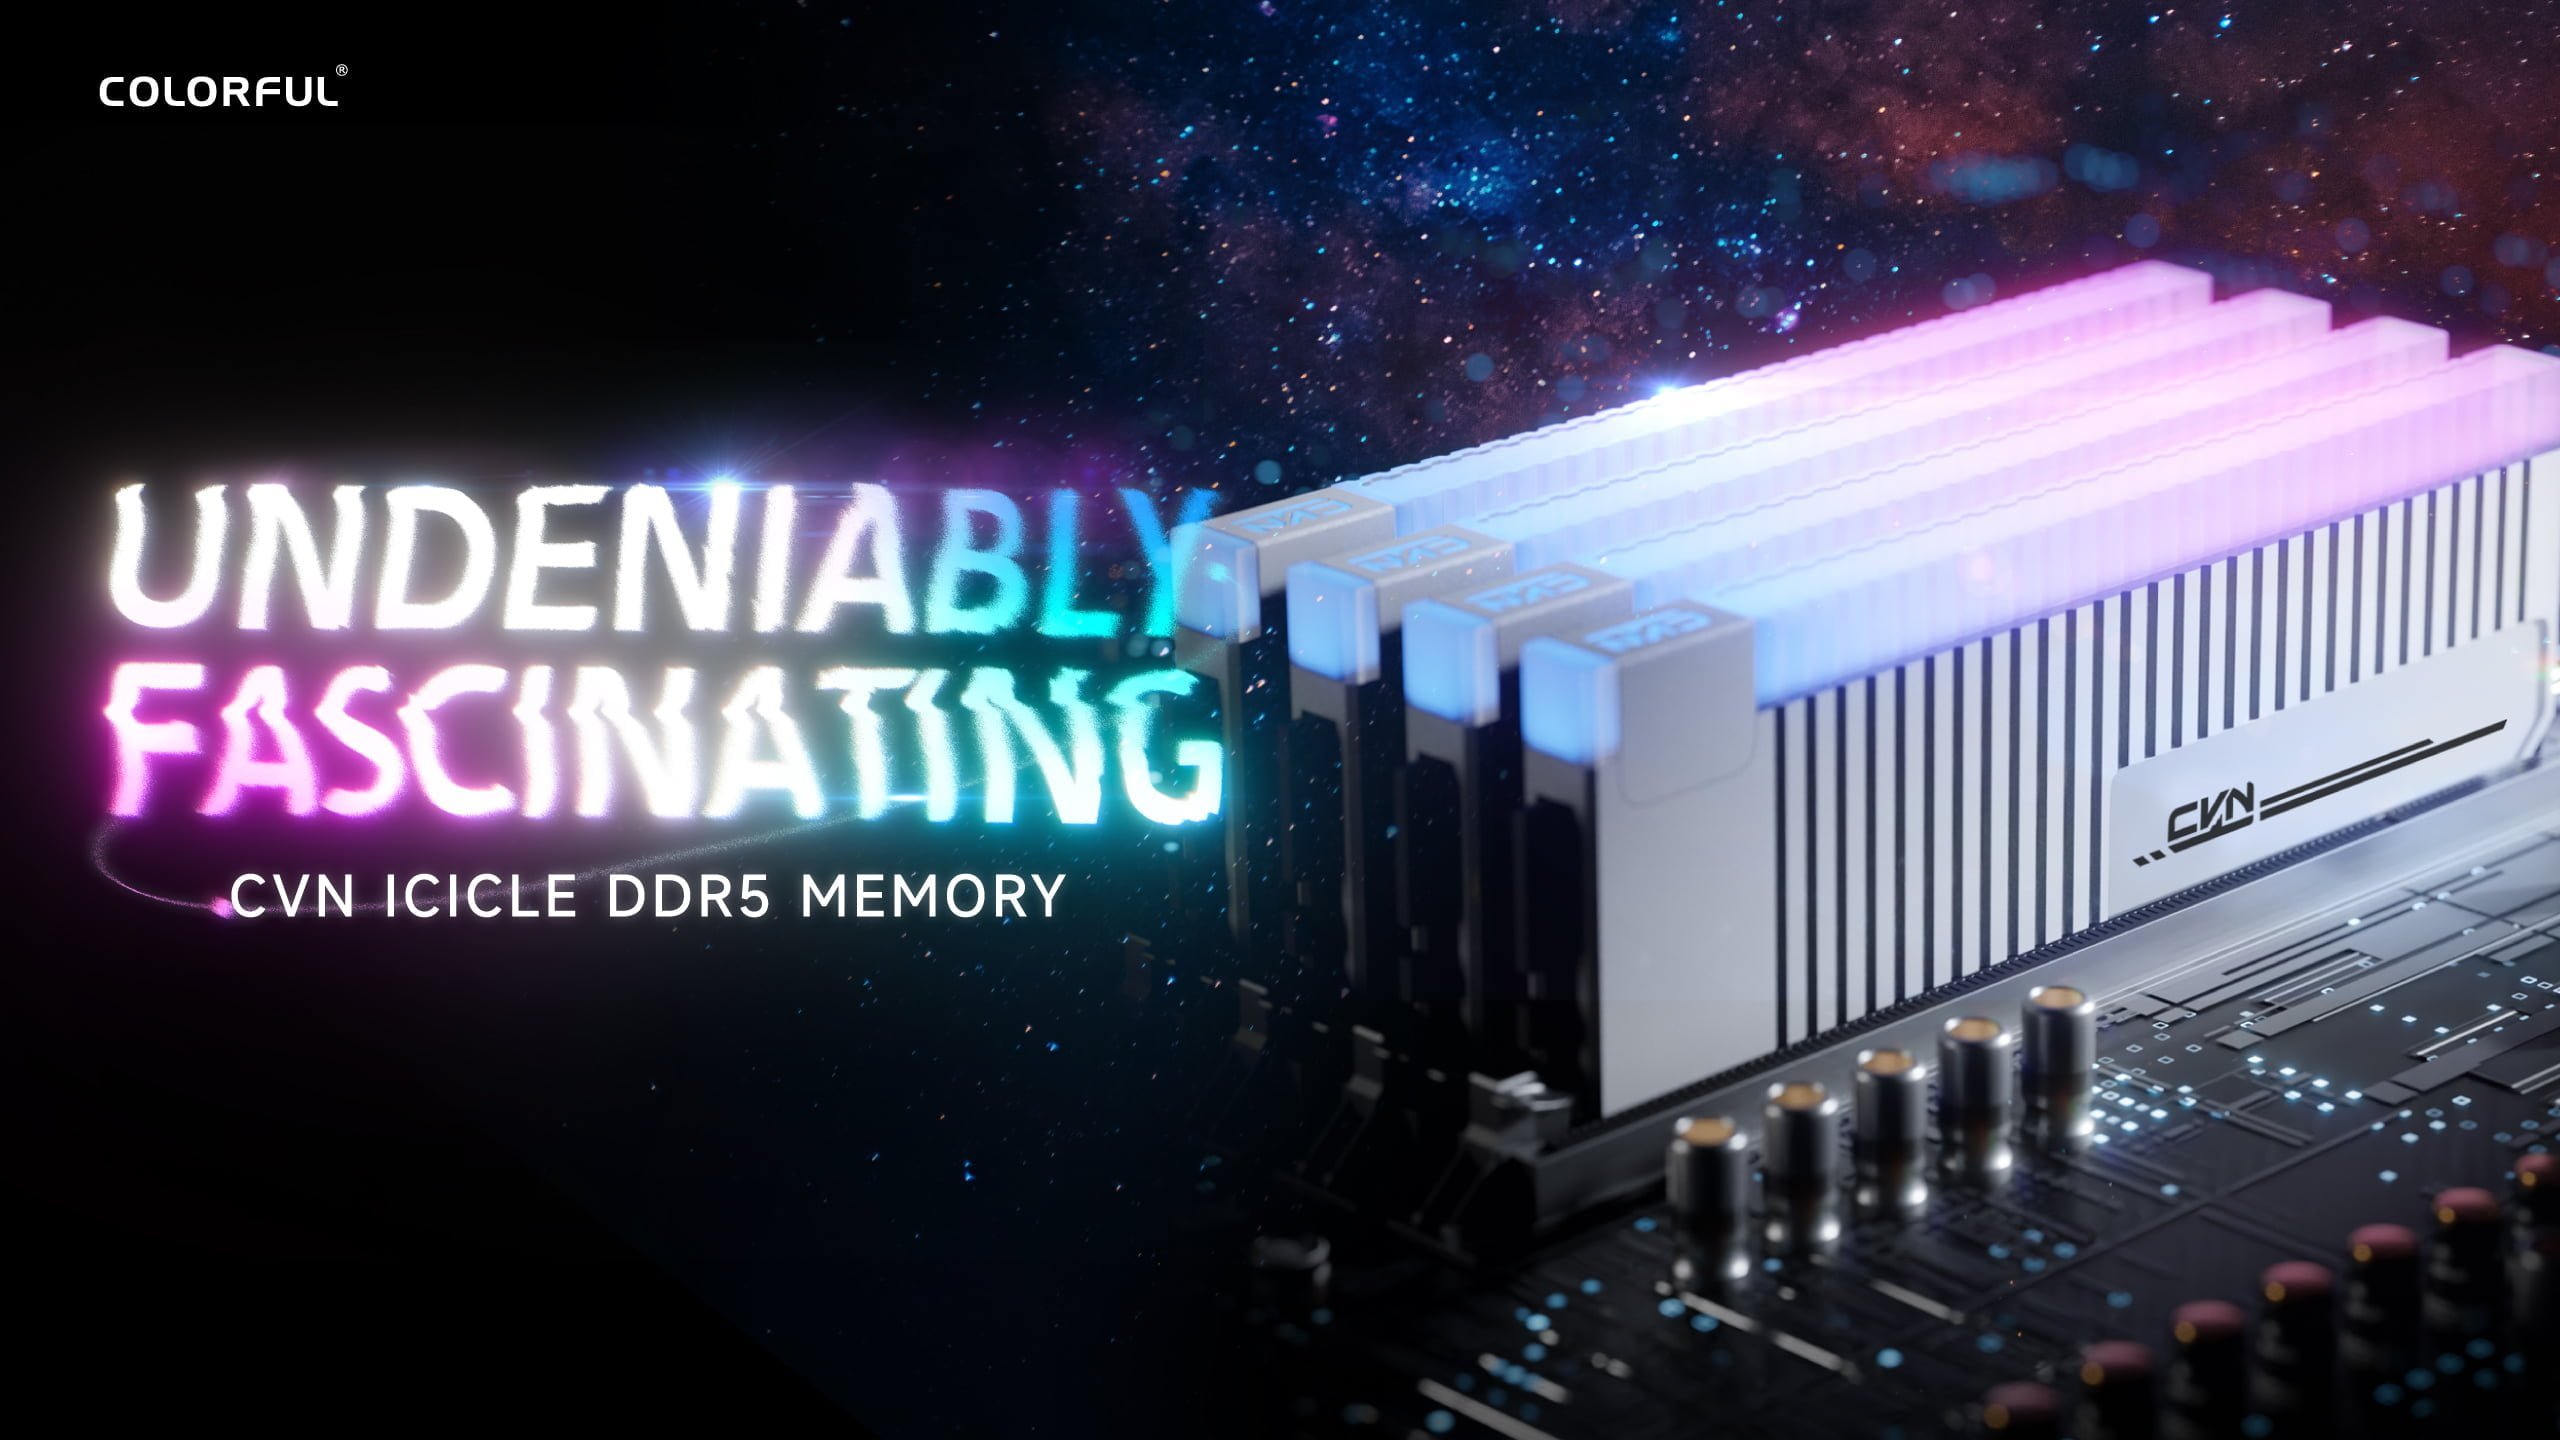 [PR] Colorful ra mắt bộ nhớ CVN ICICLE DDR5 dành cho người dùng ép xung - Image 9